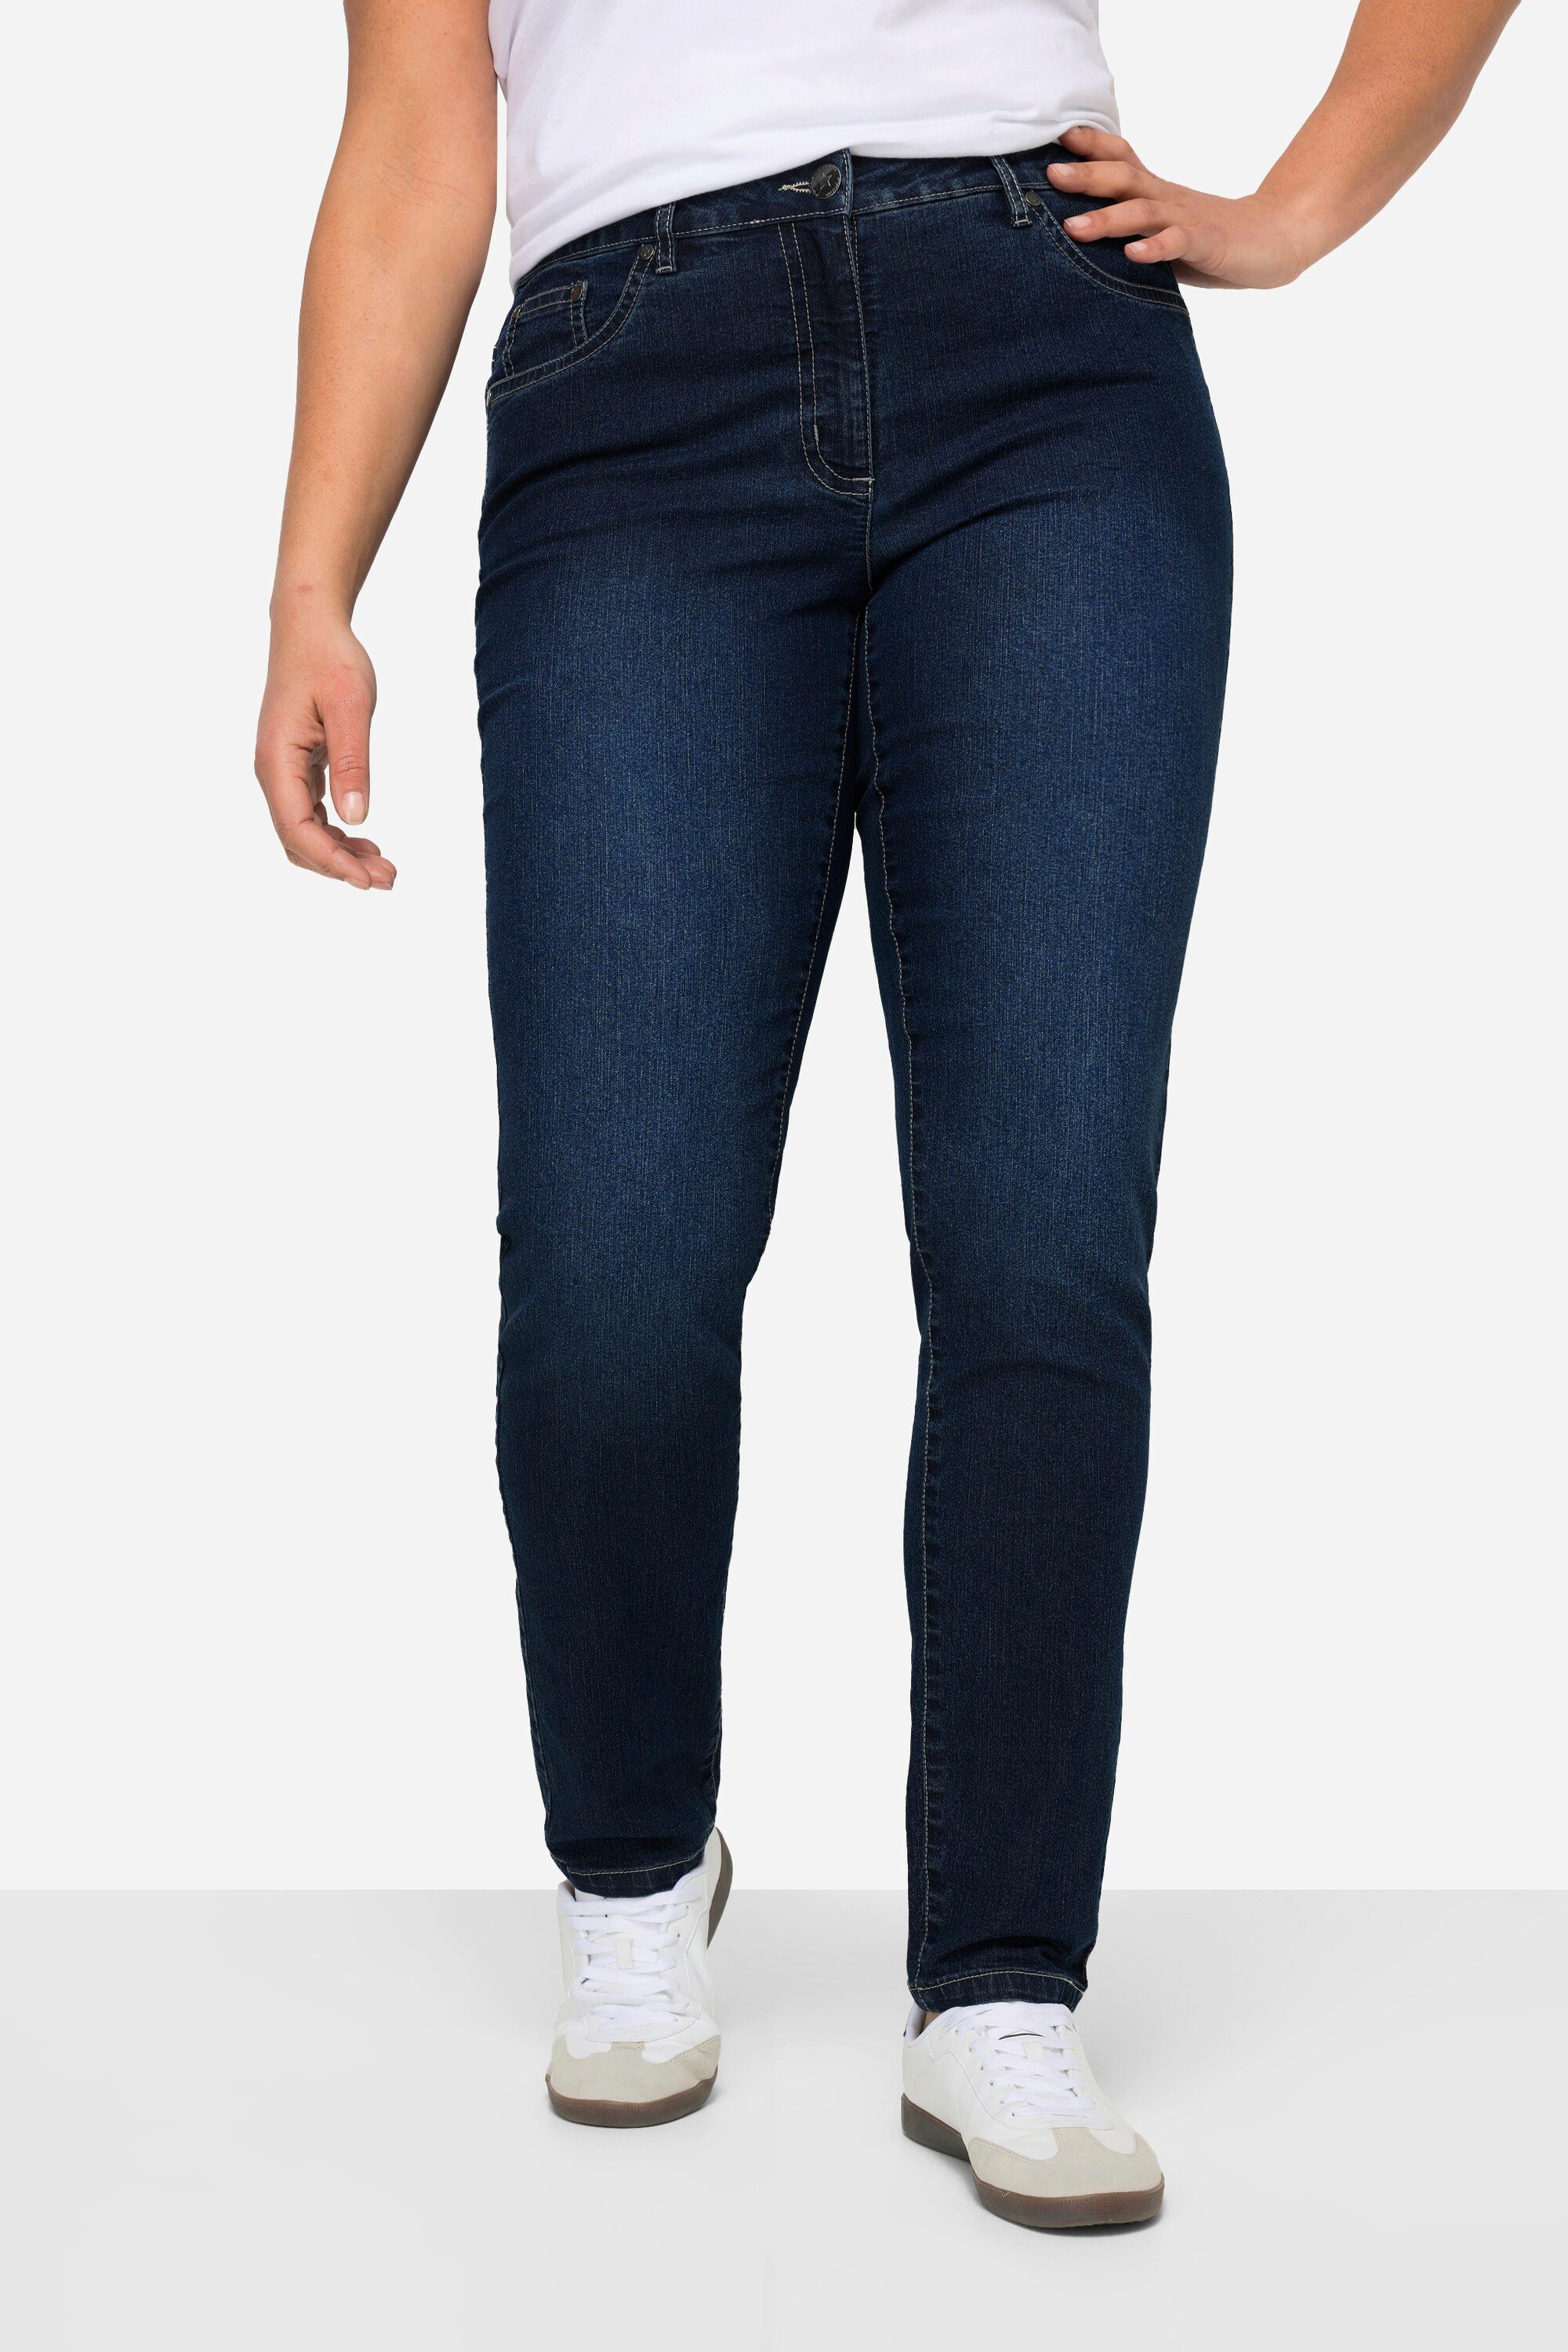 Angel of Style Röhrenjeans Jeans Emma Slim Fit Stretchkomfort 5-Pocket